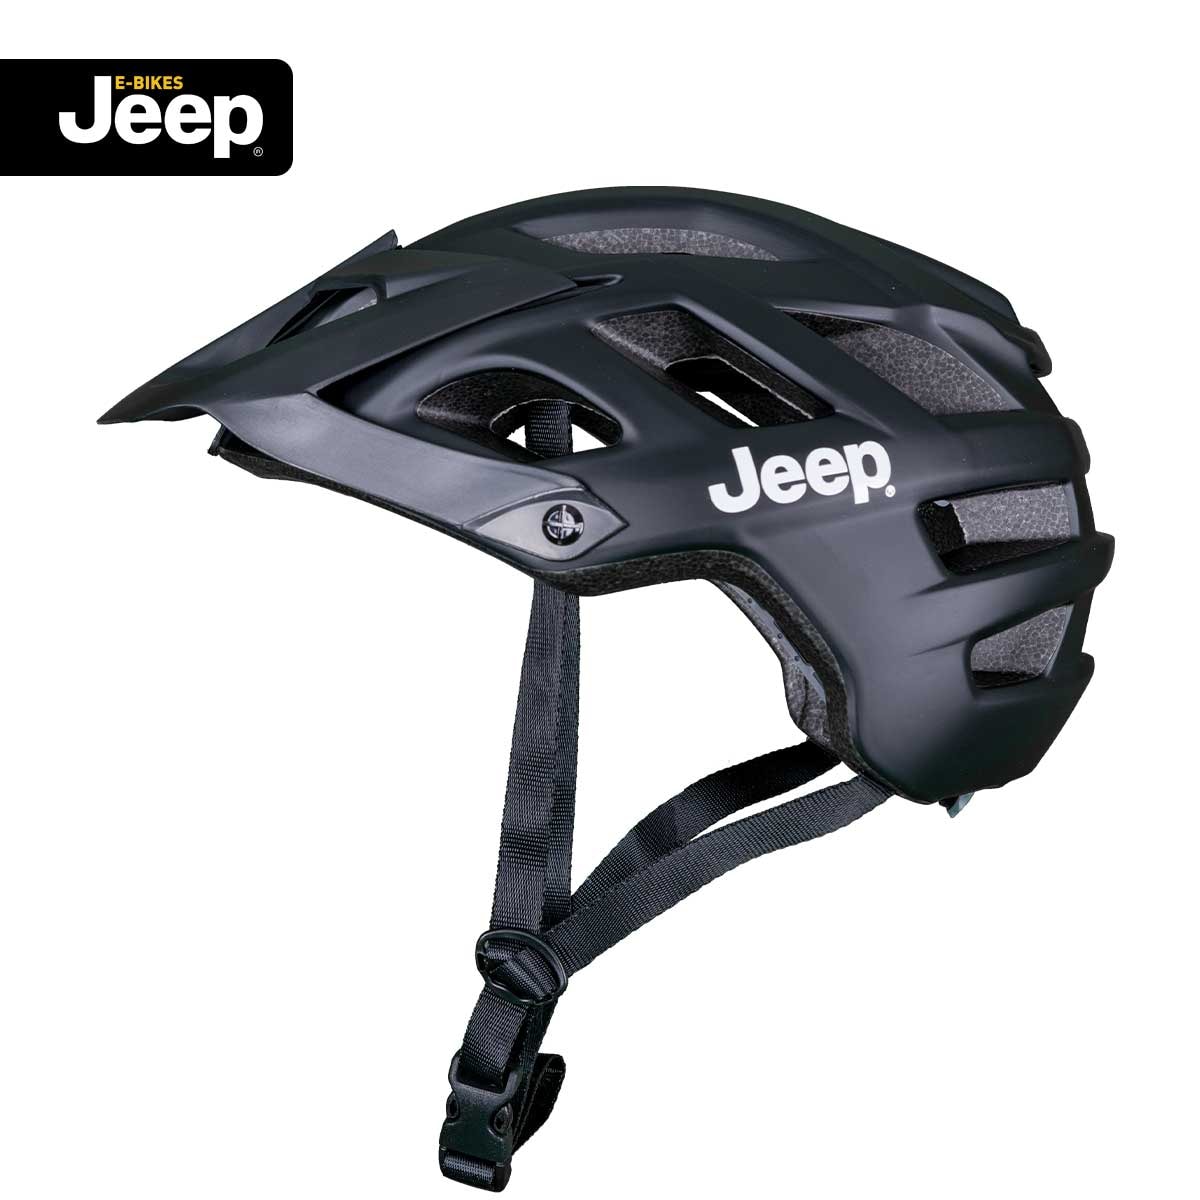 Jeep E-Bikes Helm Pro black L